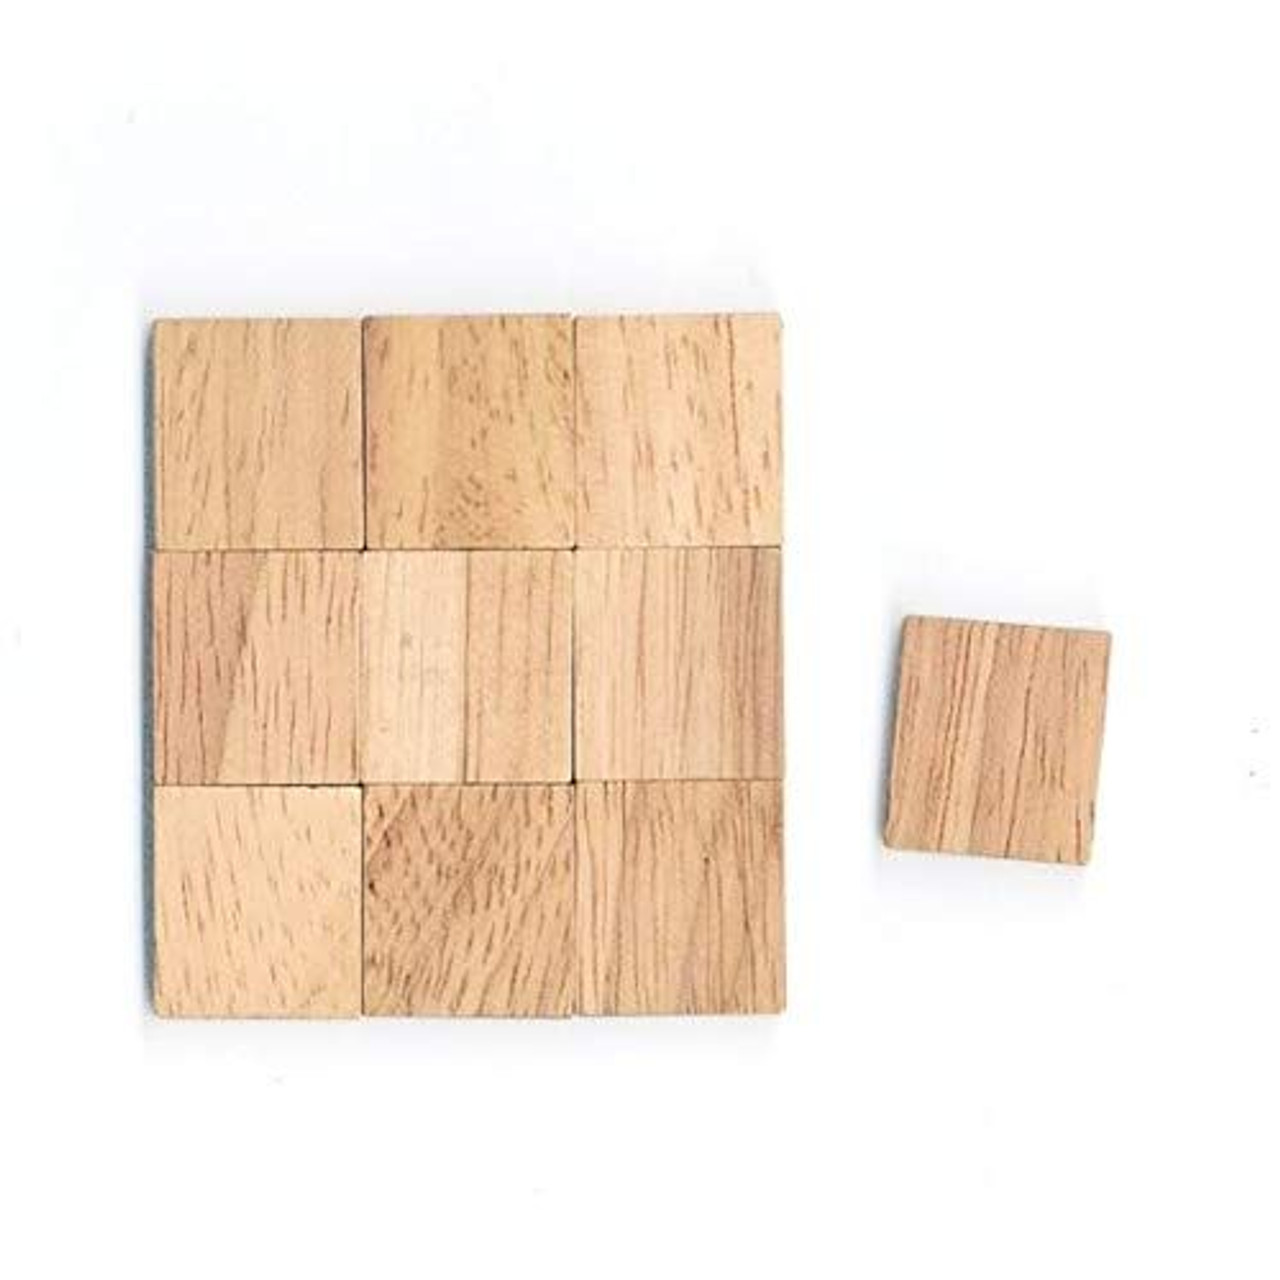 Blank Plain Wooden Tile